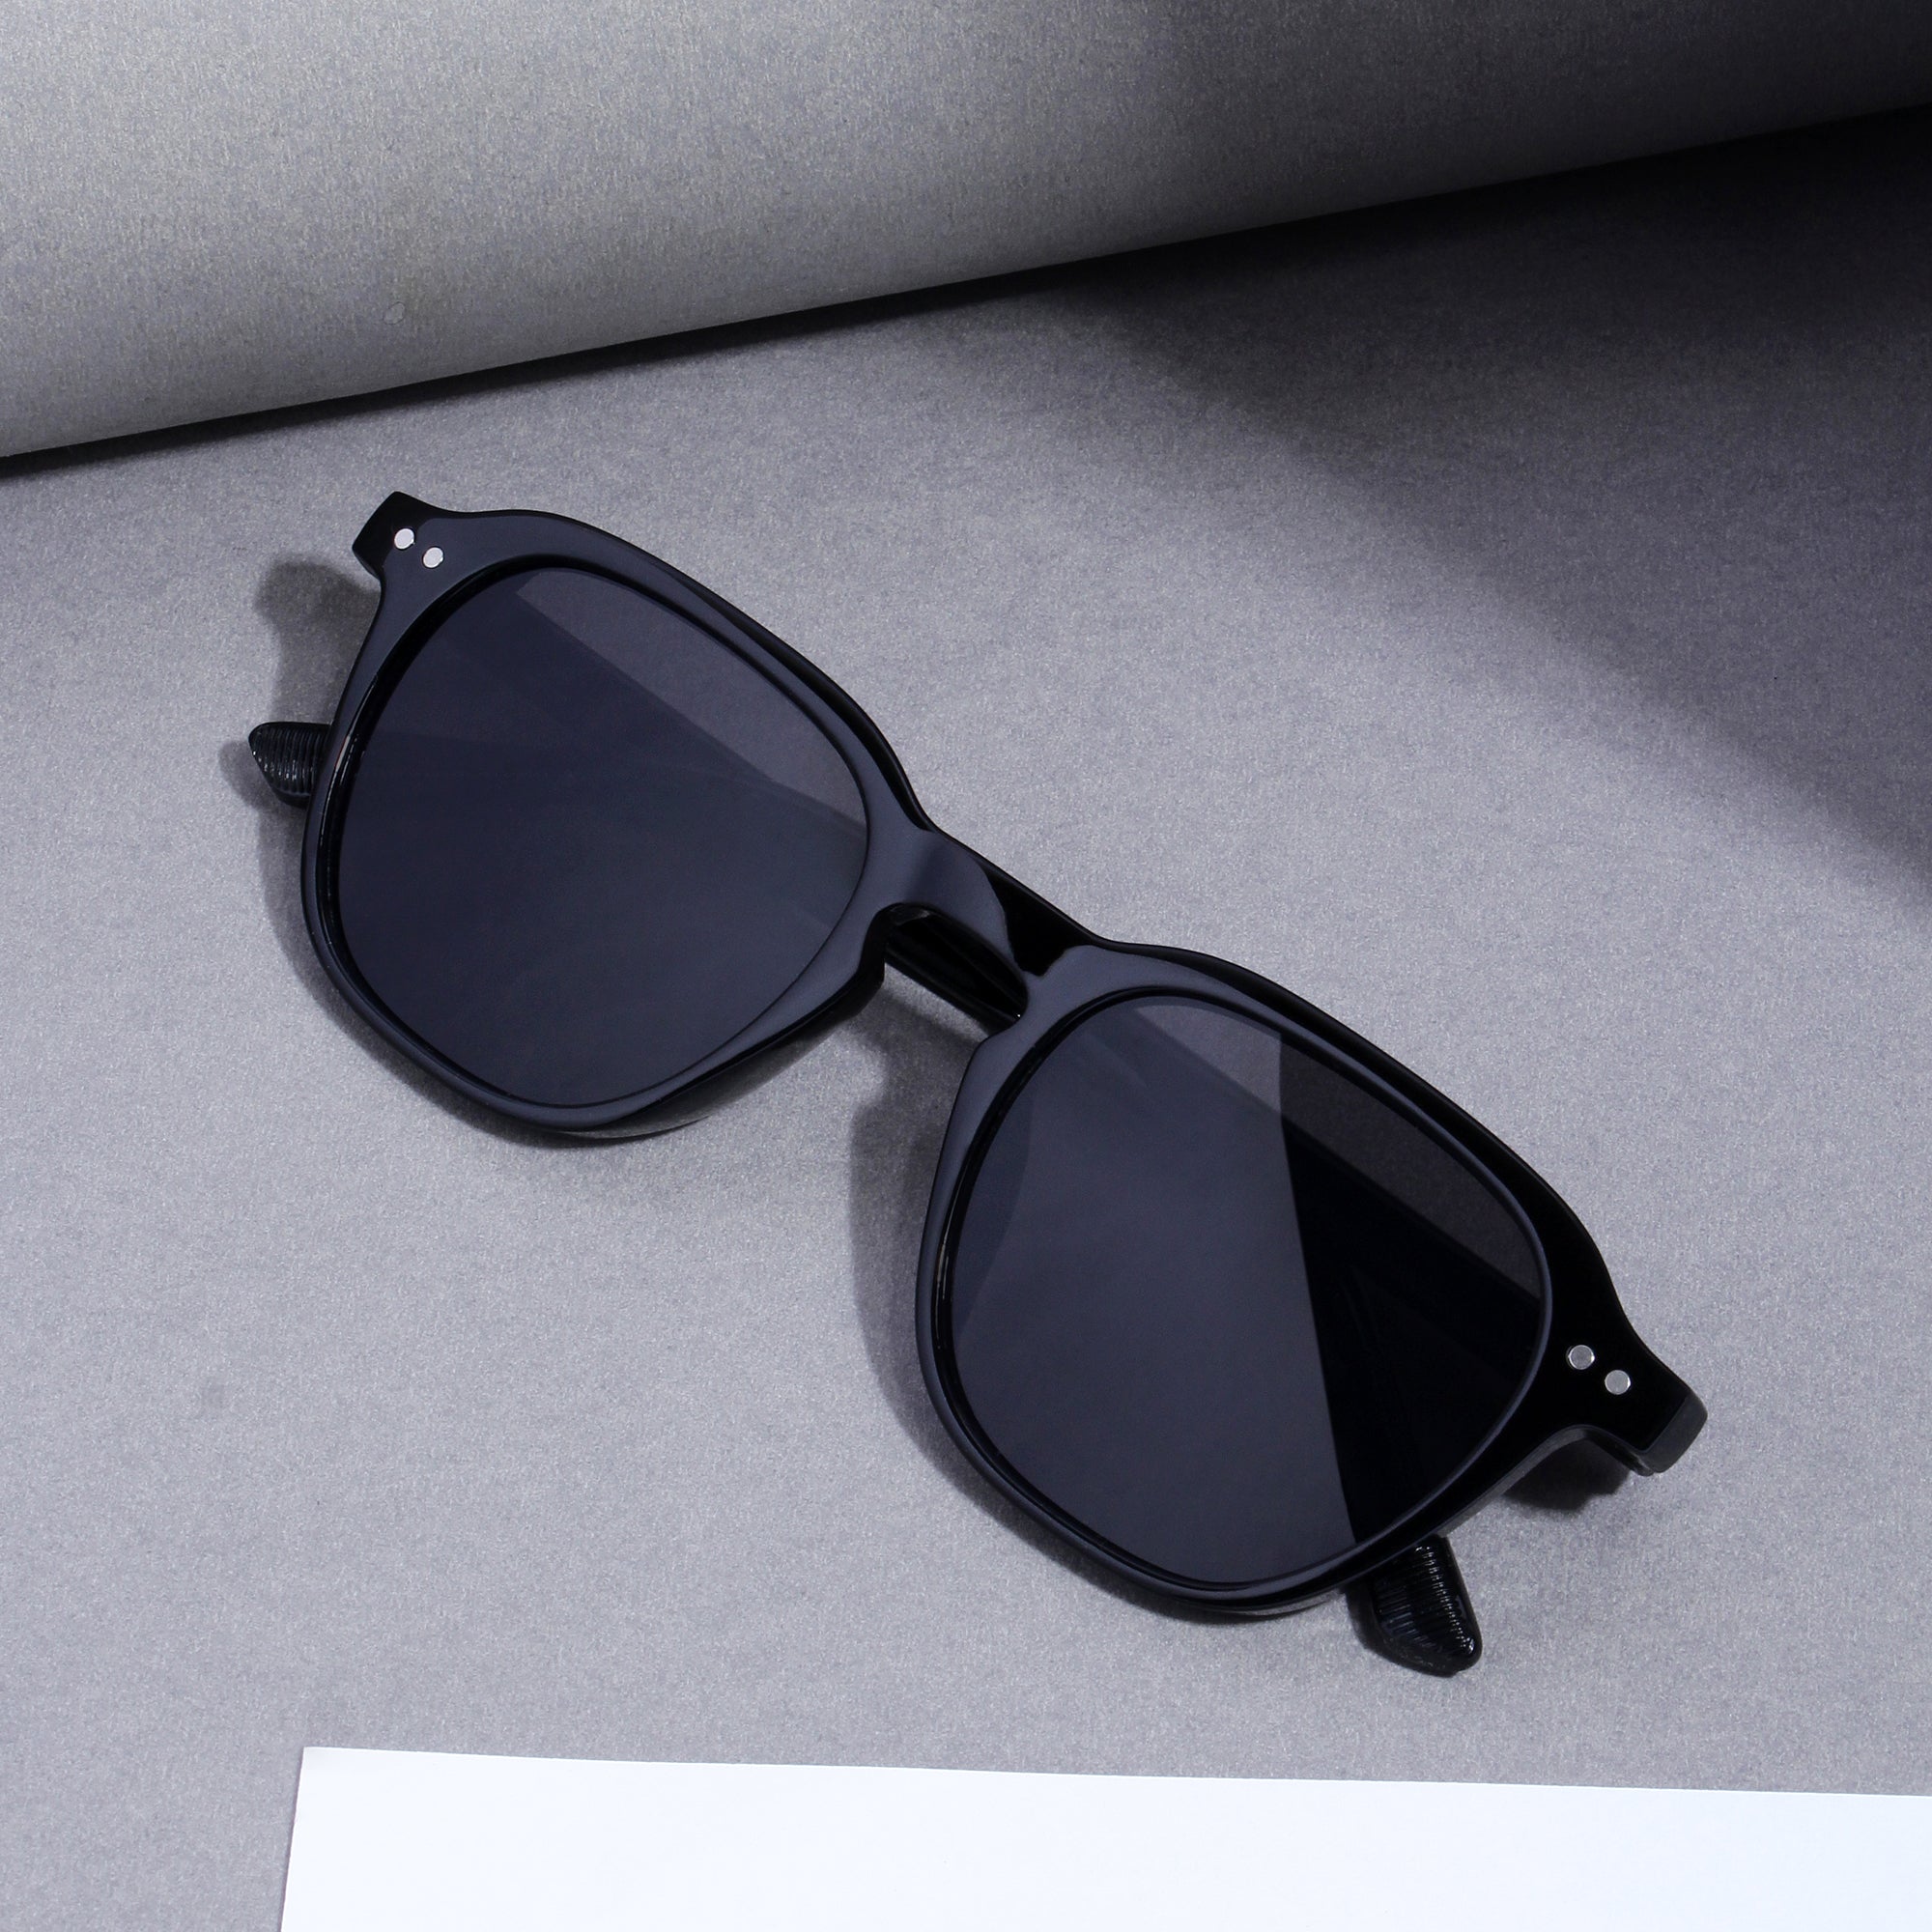 GlassyX V1 Black And Black Sunglasses